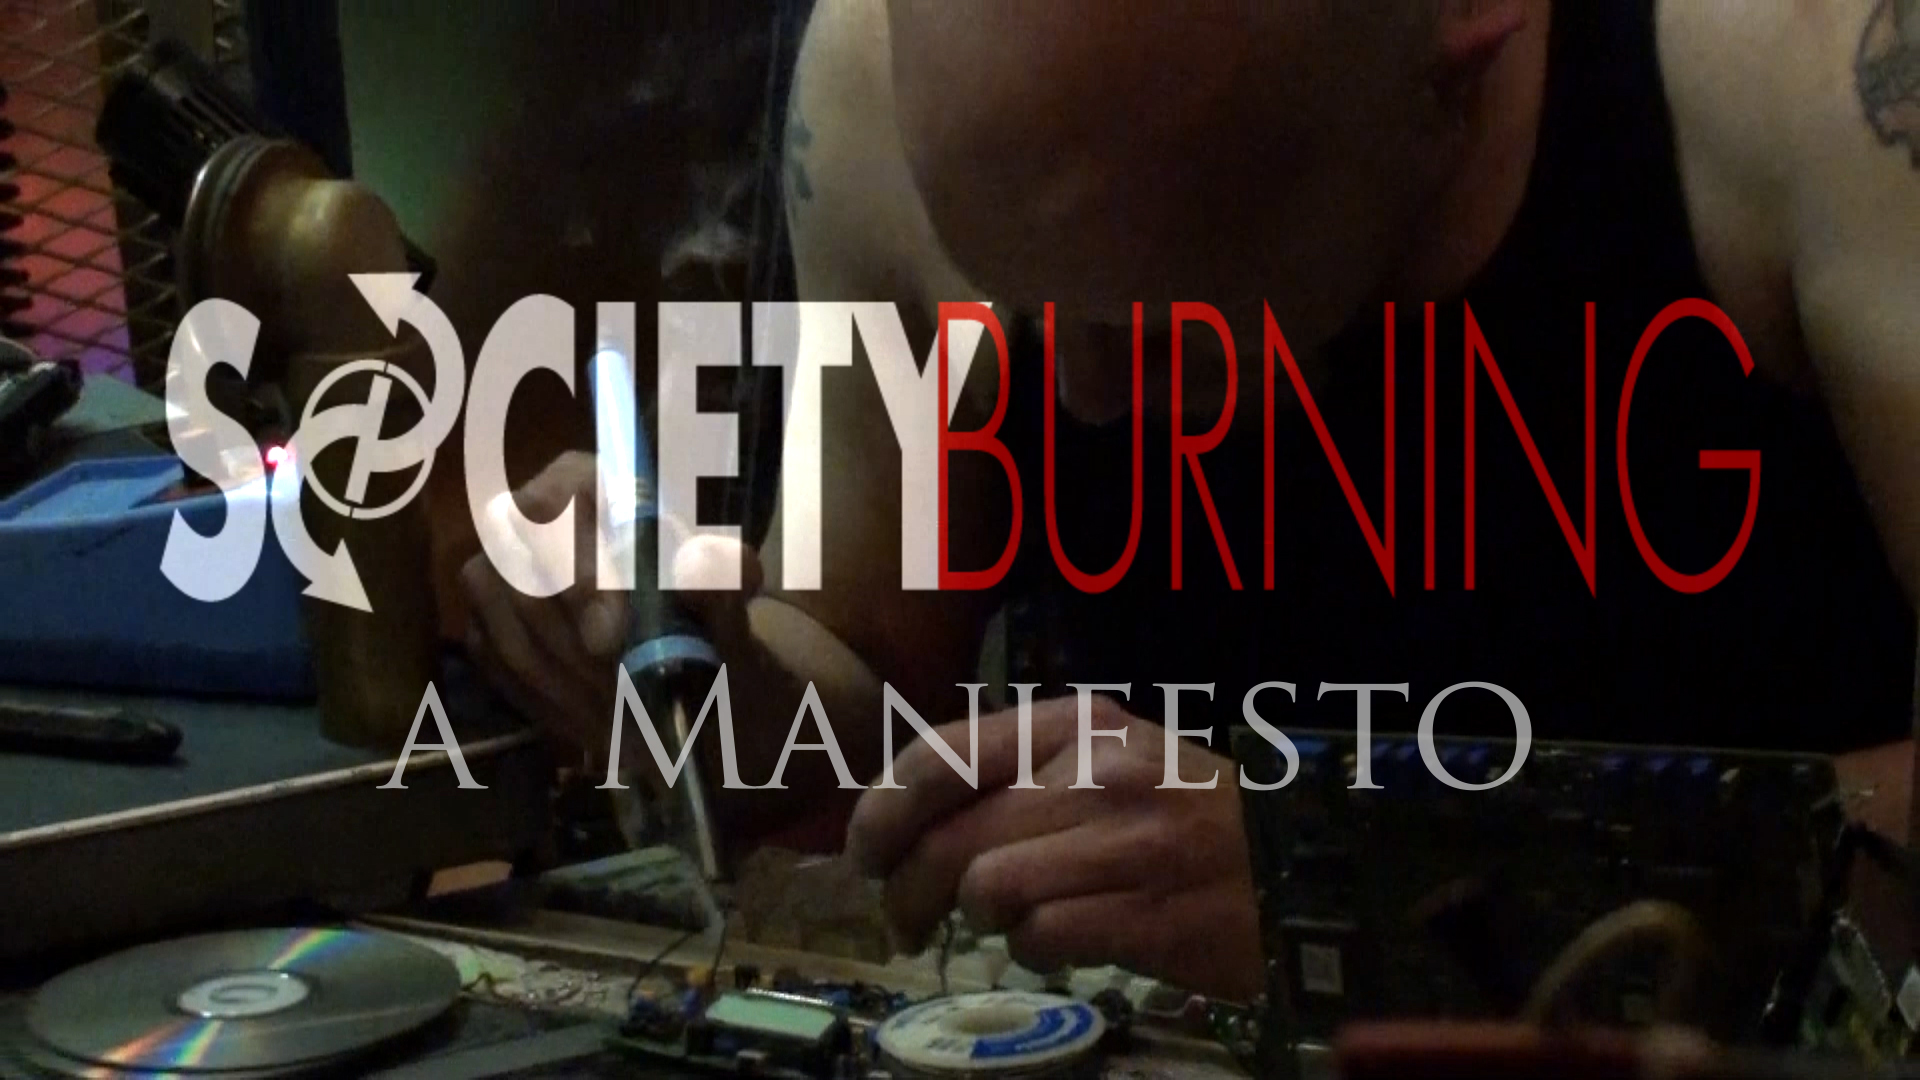 Society Burning: A Manifesto